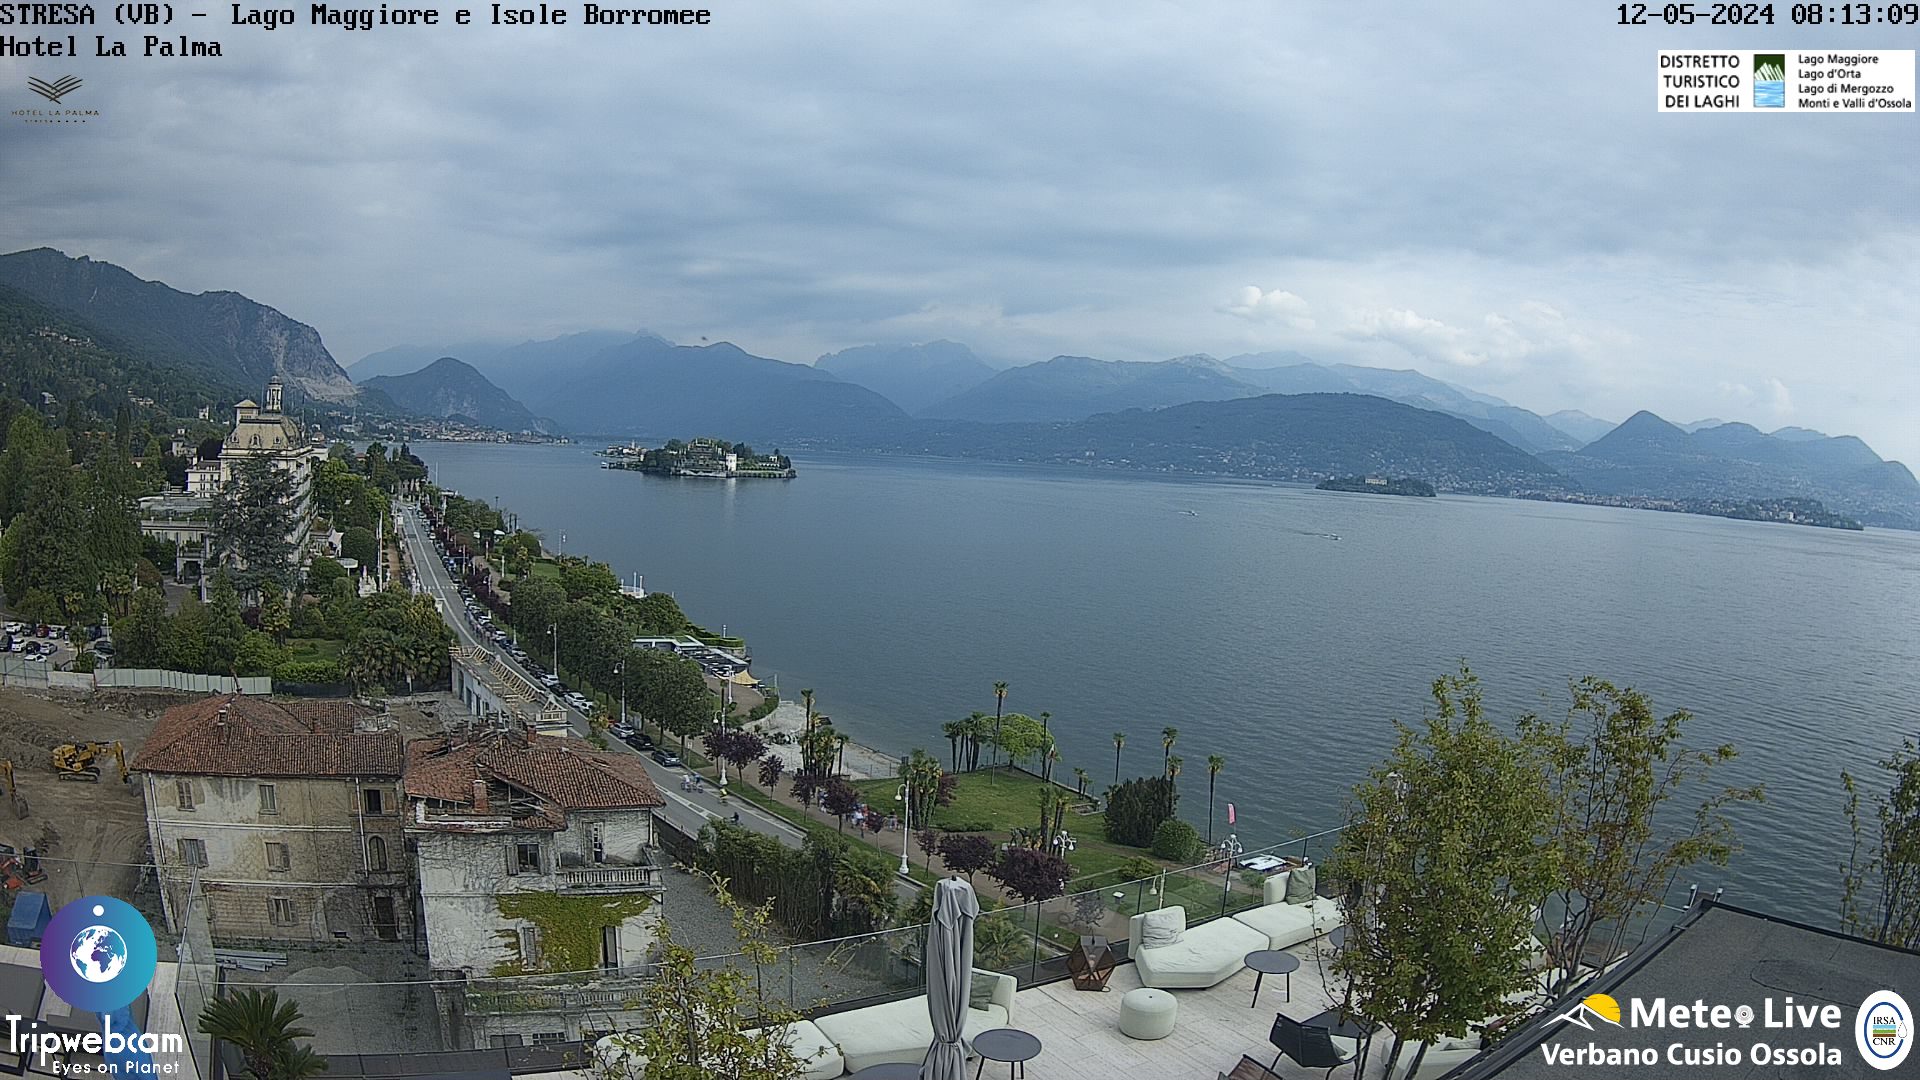 Stresa (Lago Maggiore) Tor. 09:17